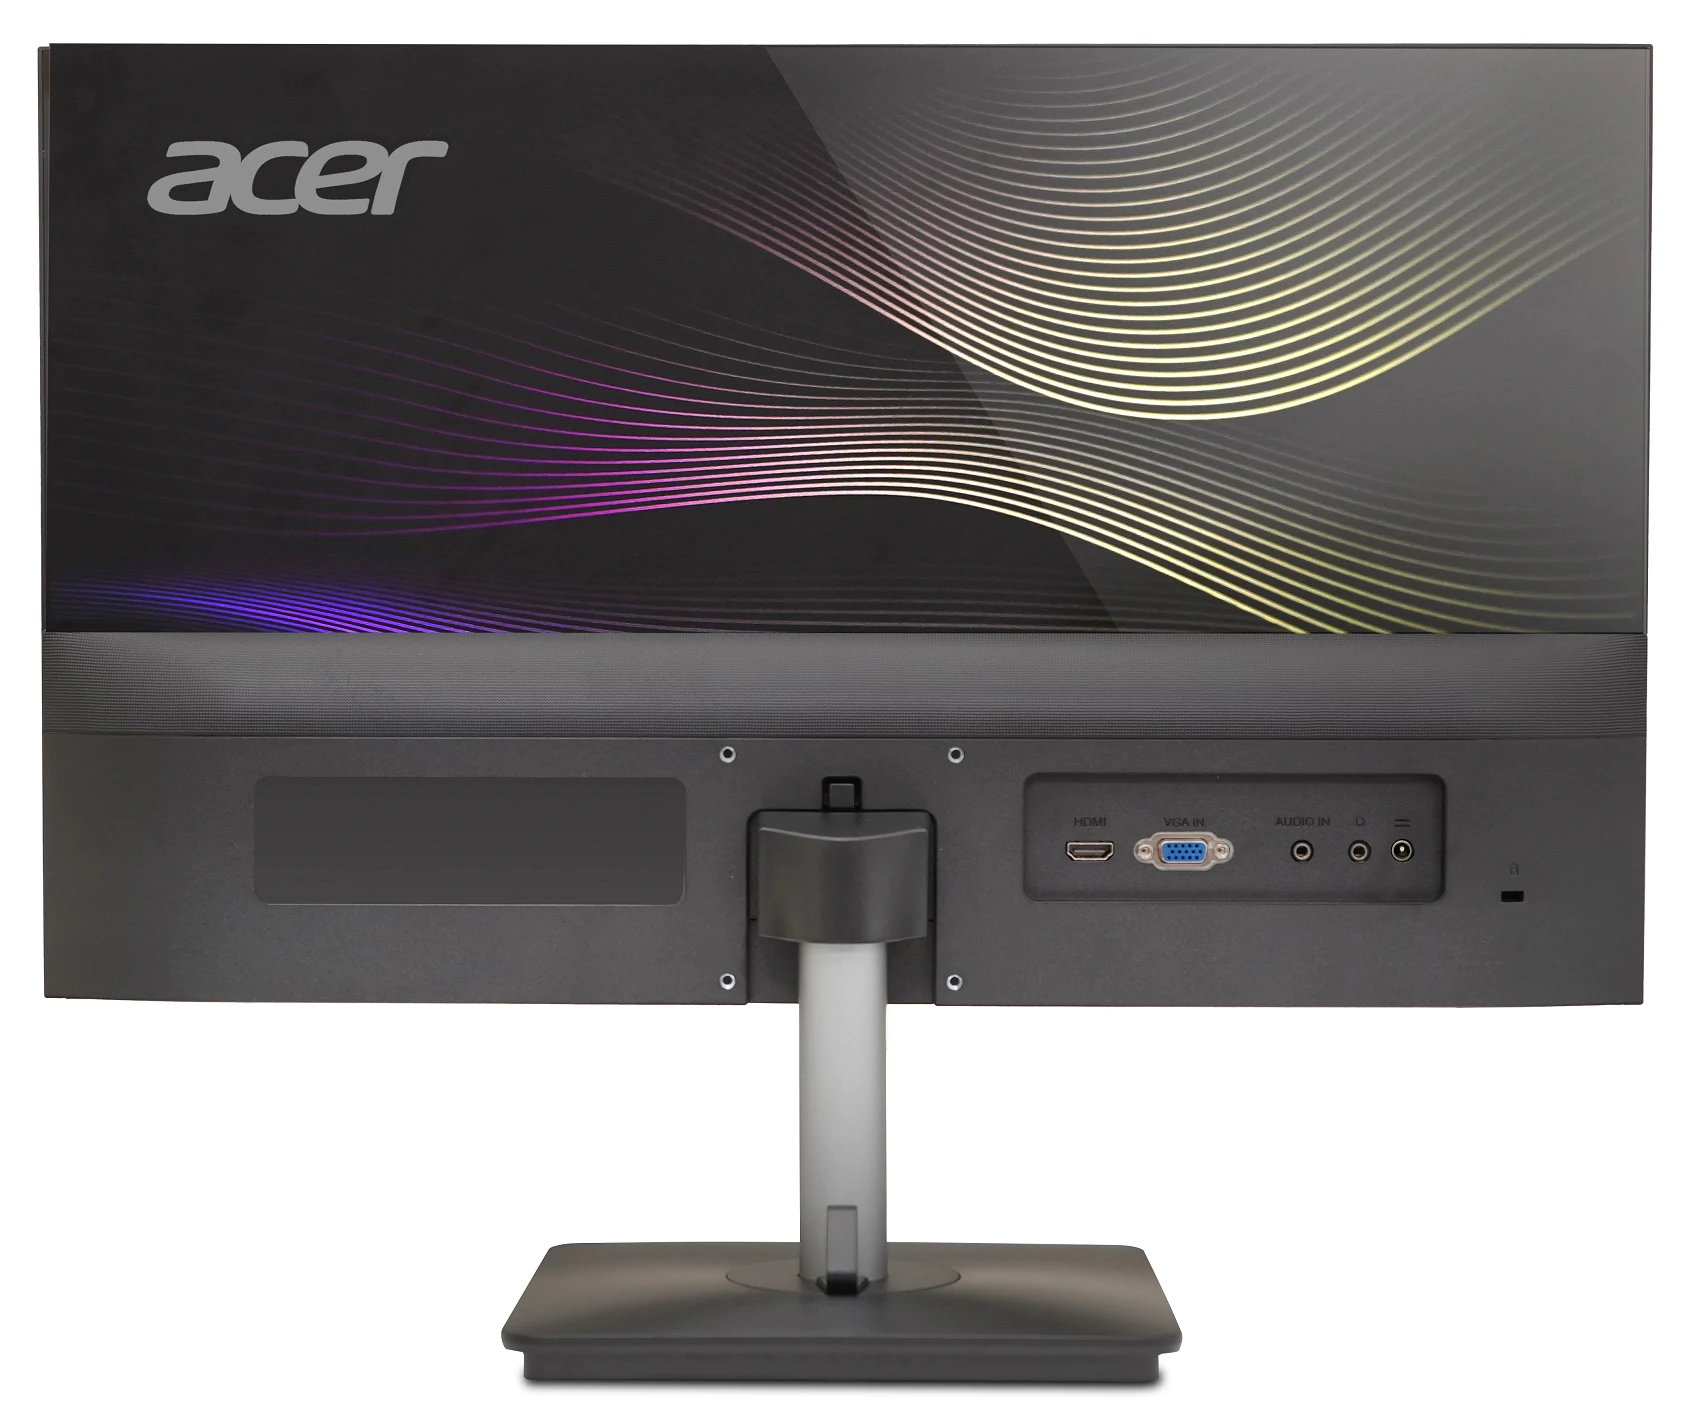 RS272 08 | Acer Aspire Vero | กลุ่มผลิตภัณฑ์ Vero ผลิตภัณฑ์ที่เป็นมิตรต่อสิ่งแวดล้อมโดยเอเซอร์